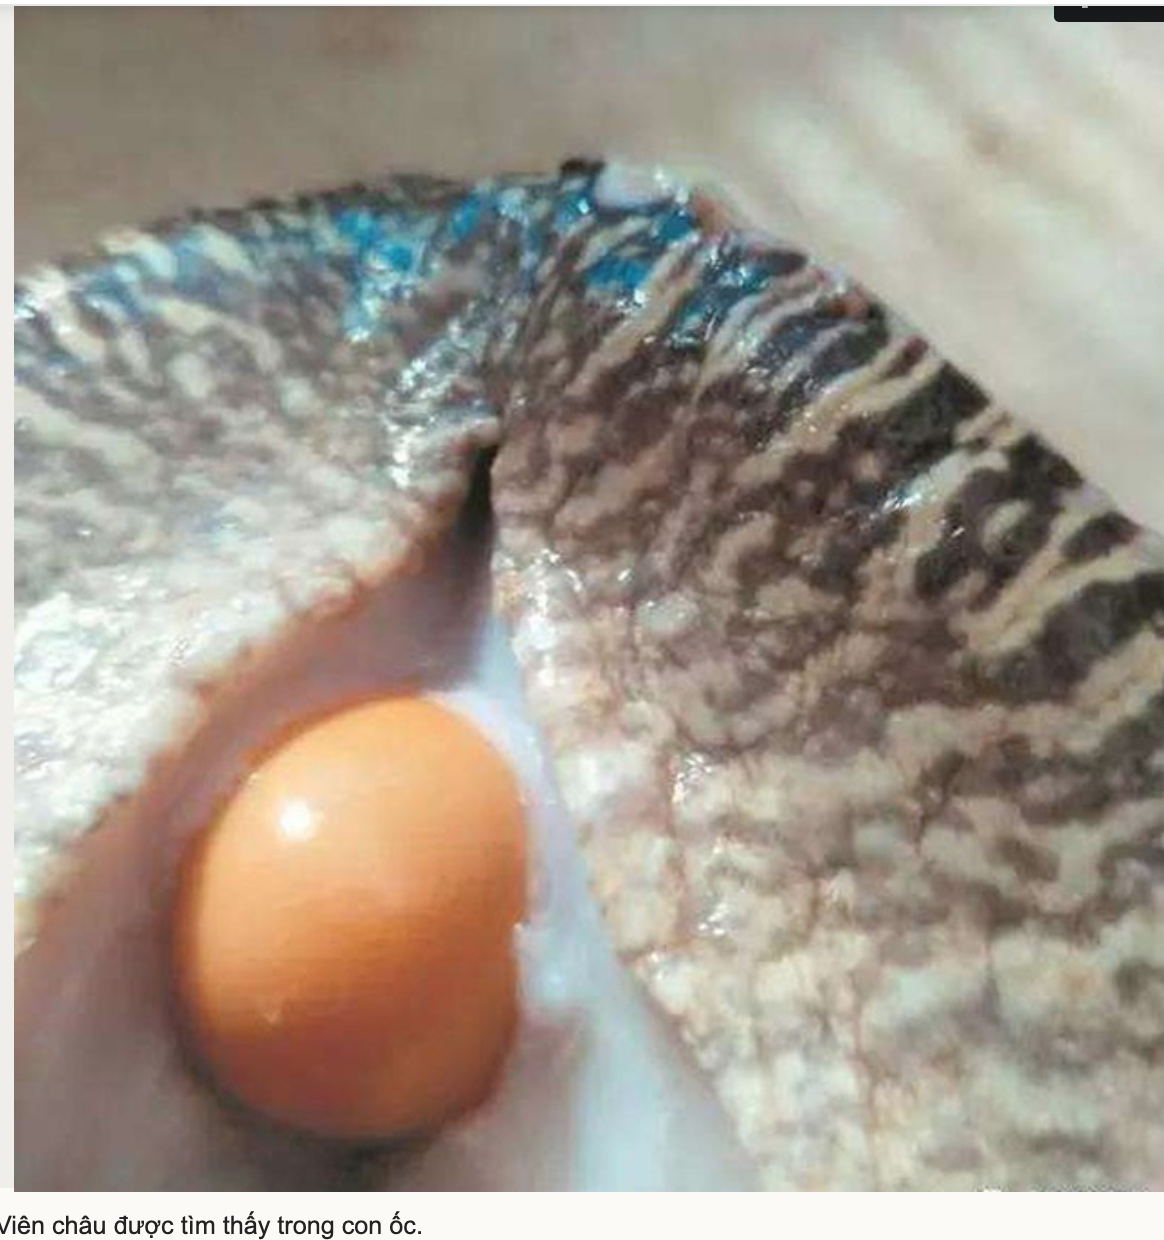 Viên châu được tìm thấy trong con ốc sên vàng.